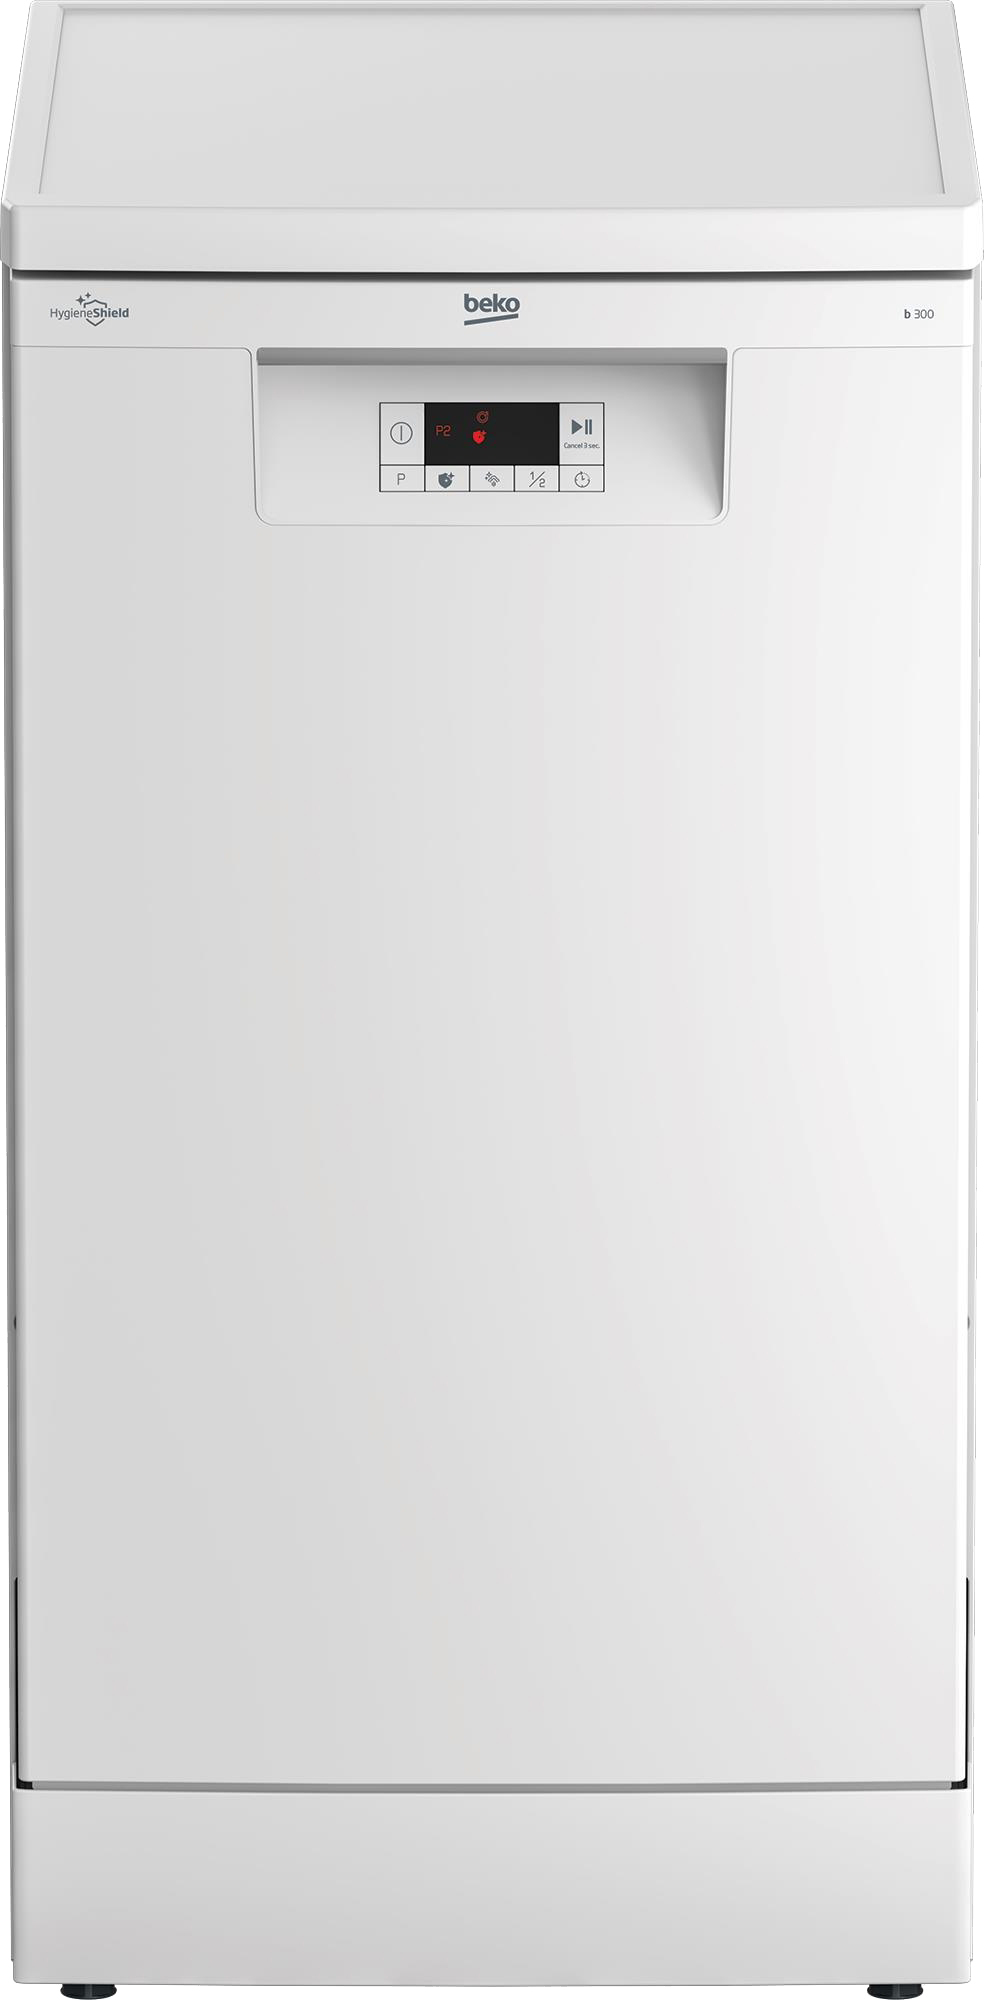 Посудомоечная машина Beko BDFS15020W в интернет-магазине, главное фото